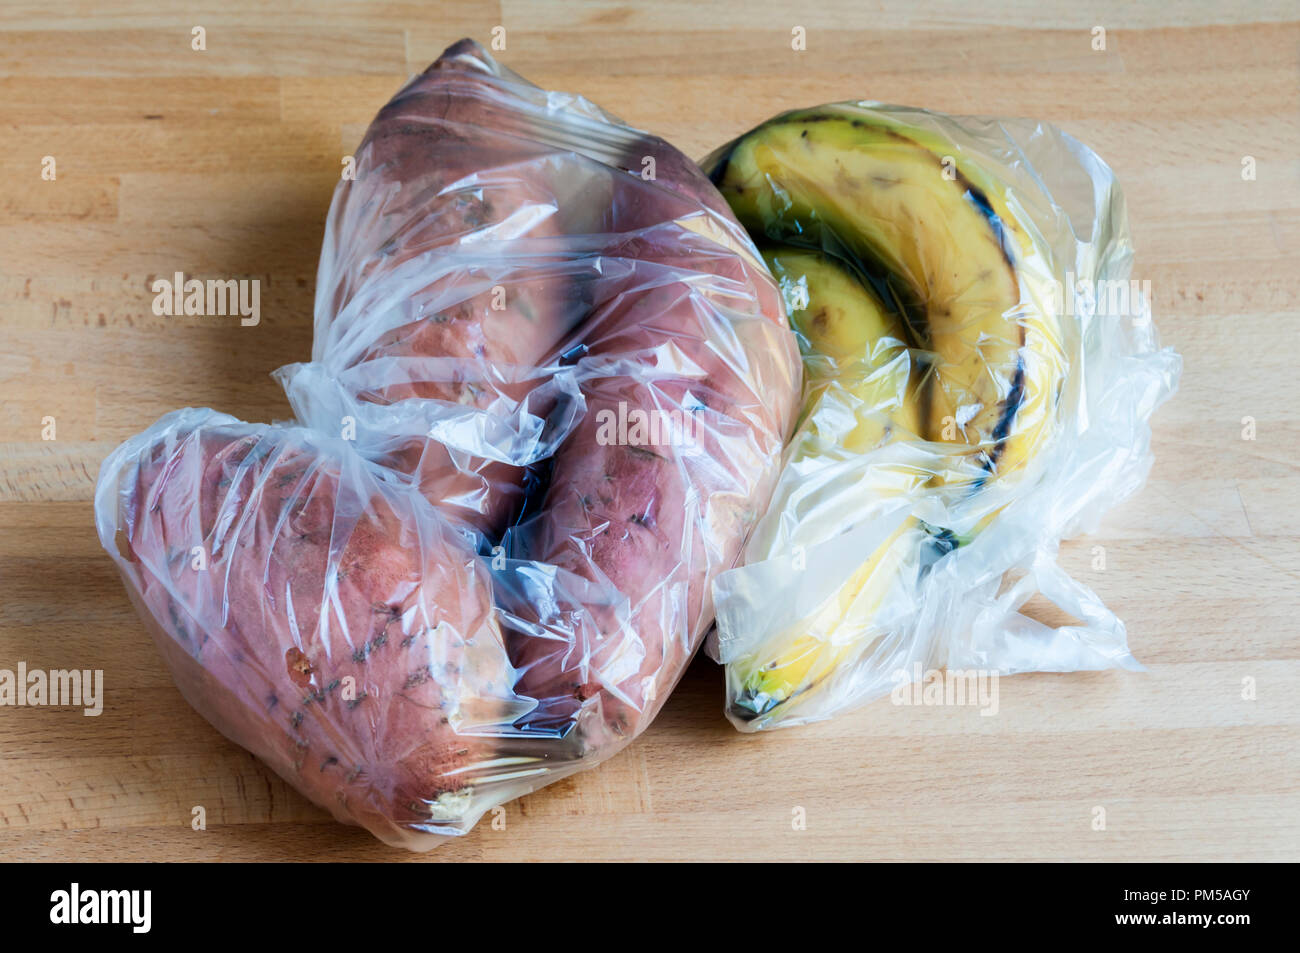 Frutta fresca e verdura da supermercato in sacchetti di plastica. Waitrose hanno annunciato che la loro frutta fresca e verdura sacchetti sarà compostabile entro la primavera del 2019 Foto Stock